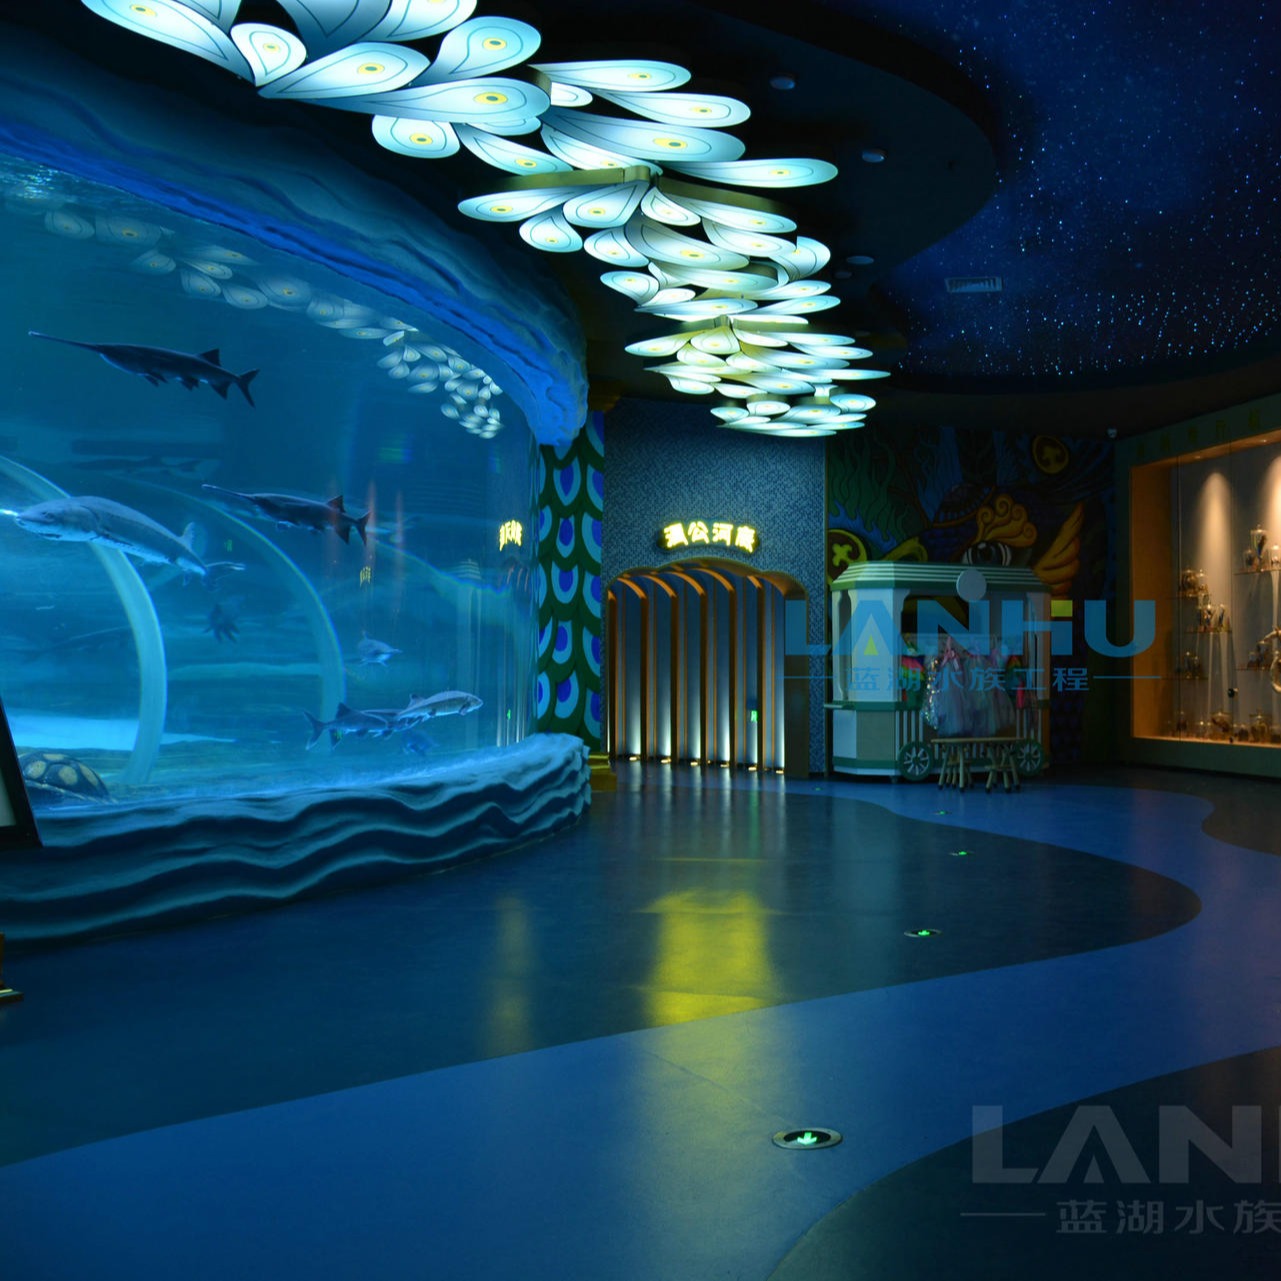 lanhu大型鱼缸 安装海洋馆设计施工维护 水族工程 亚克力鱼缸 圆柱鱼缸